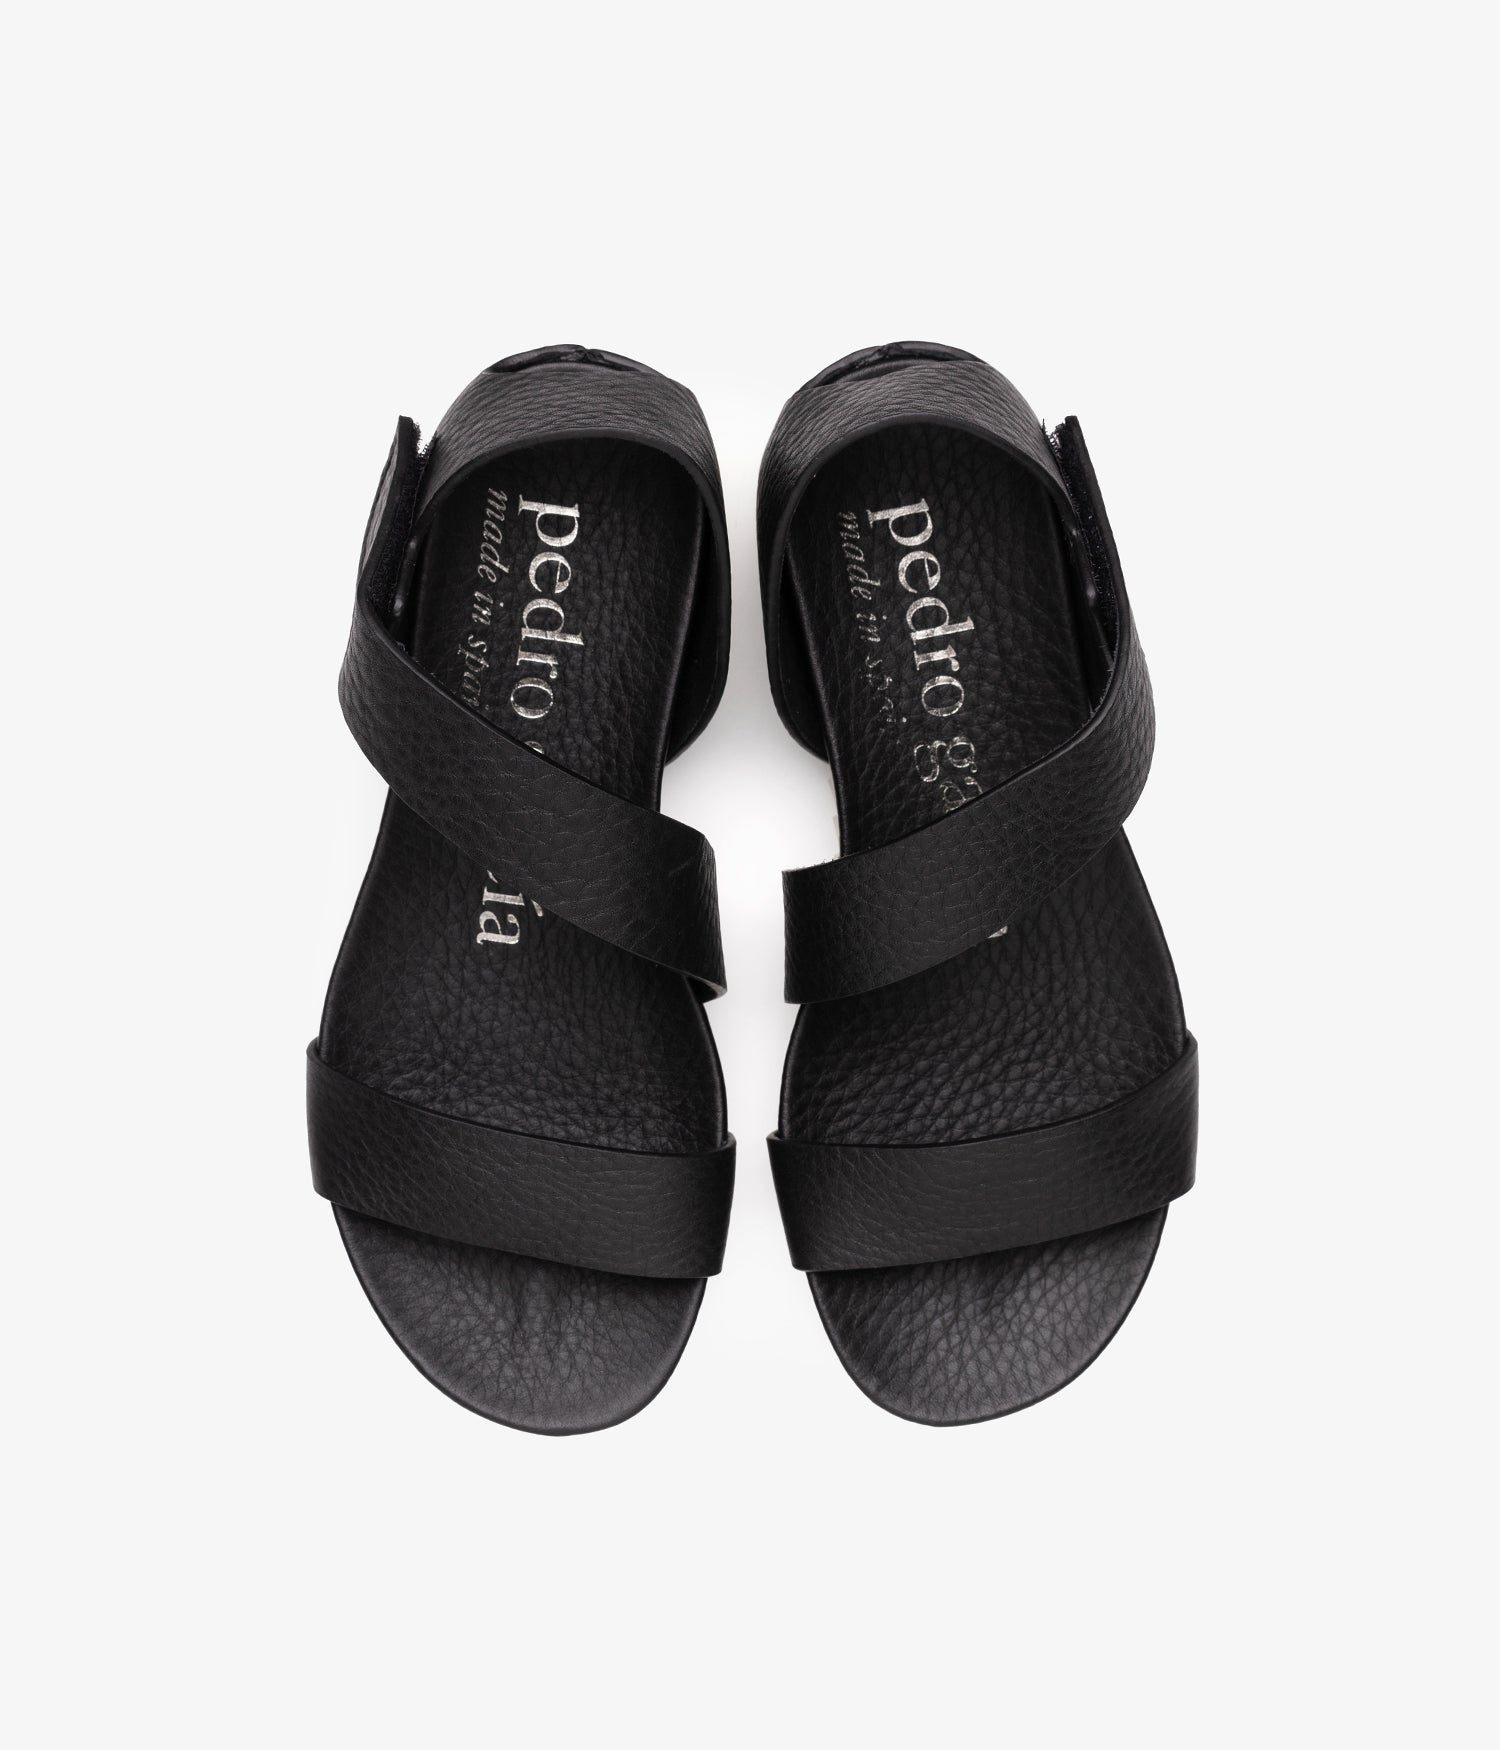 pedro garcia asymmetrical sportif sandal black jedda 3